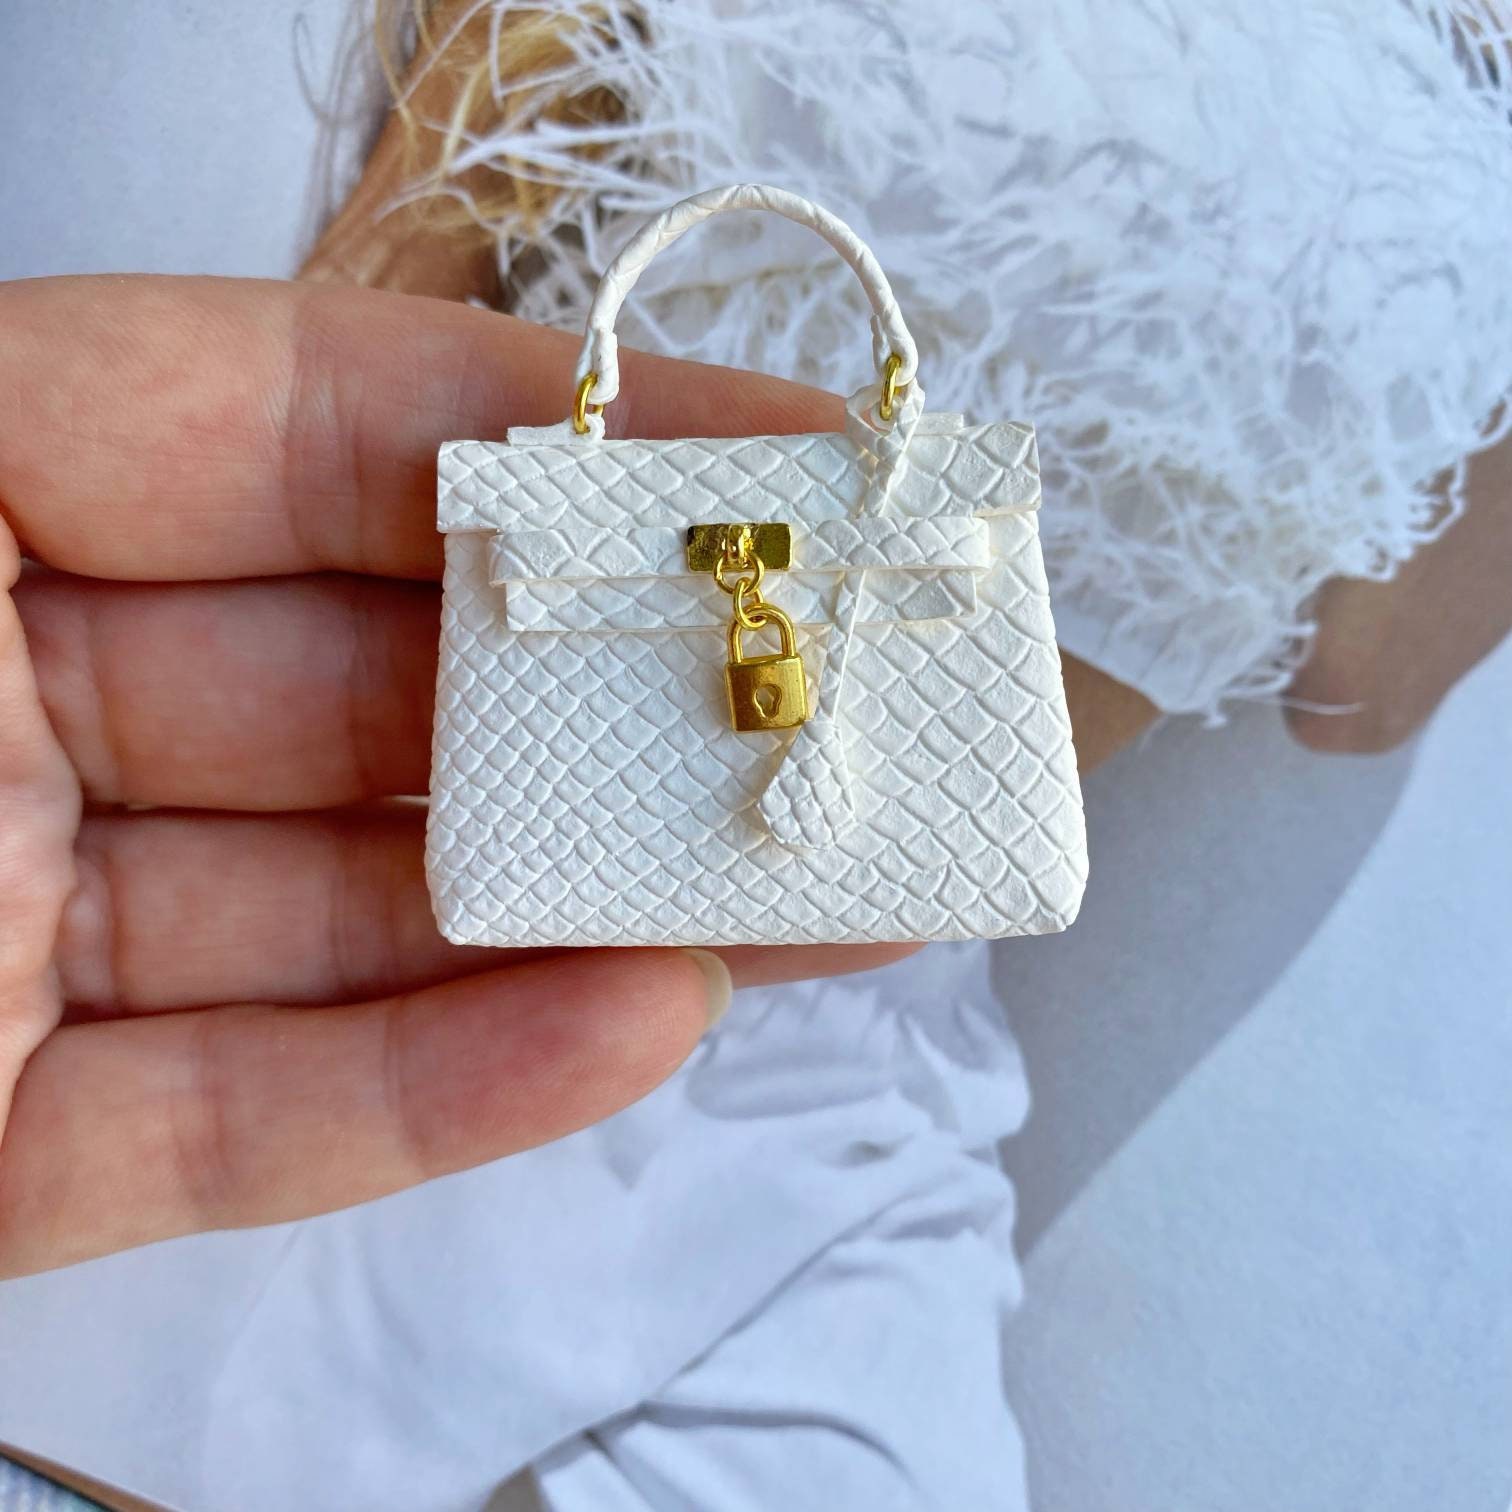 Beautiful Gucci Handbag - 8x8 Mini Kit - CUP1105301_846